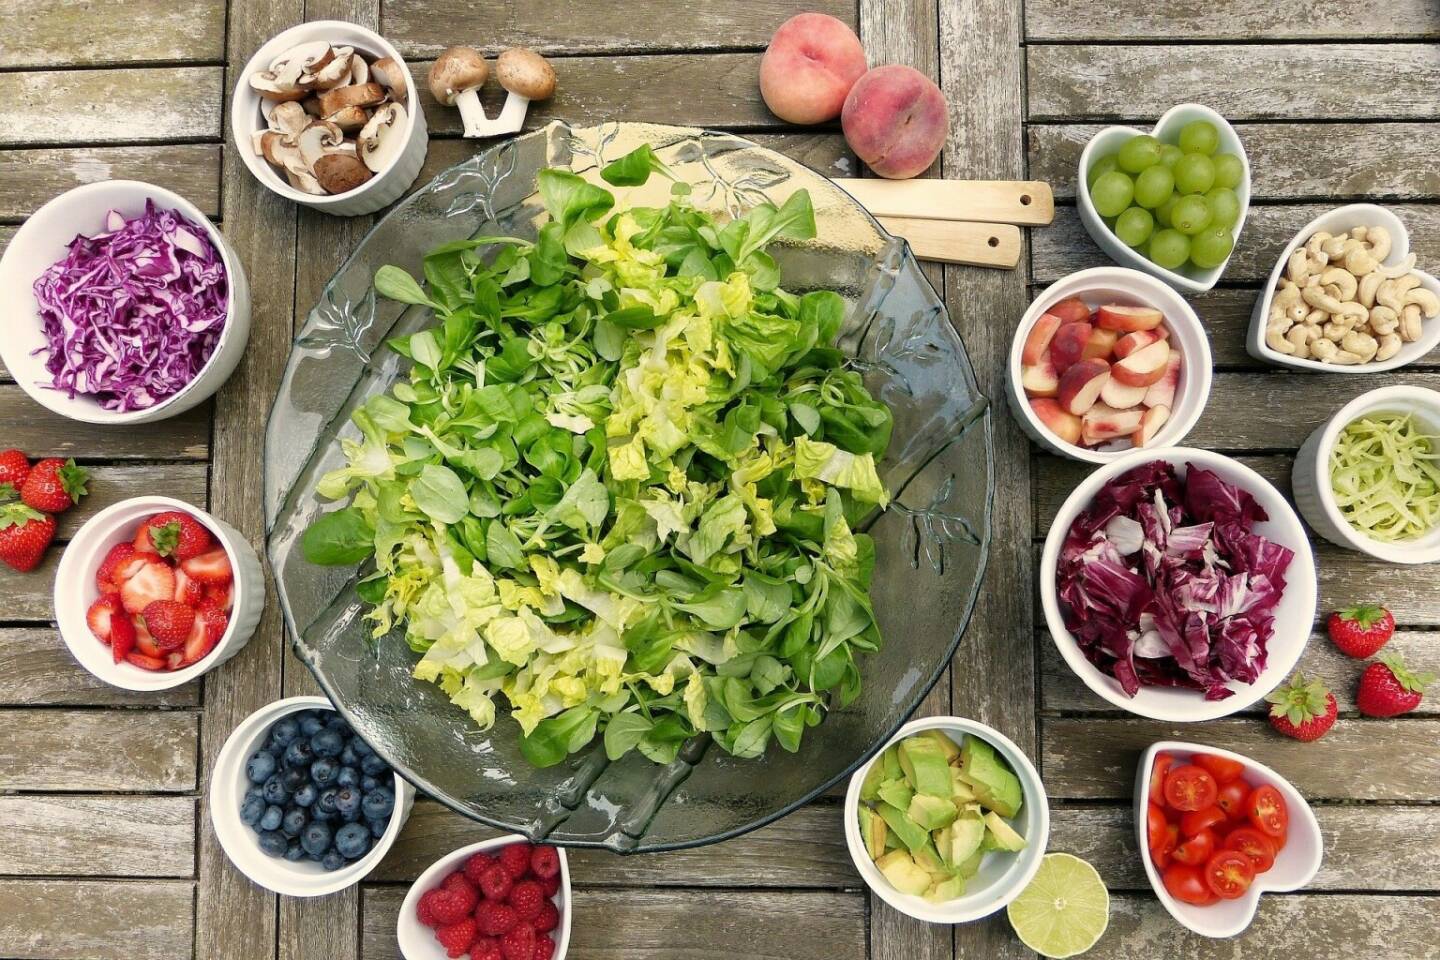 Salat, Beeren, Früchte, Gemüse, Vitamine - https://pixabay.com/de/photos/salat-früchte-beeren-gesund-2756467/